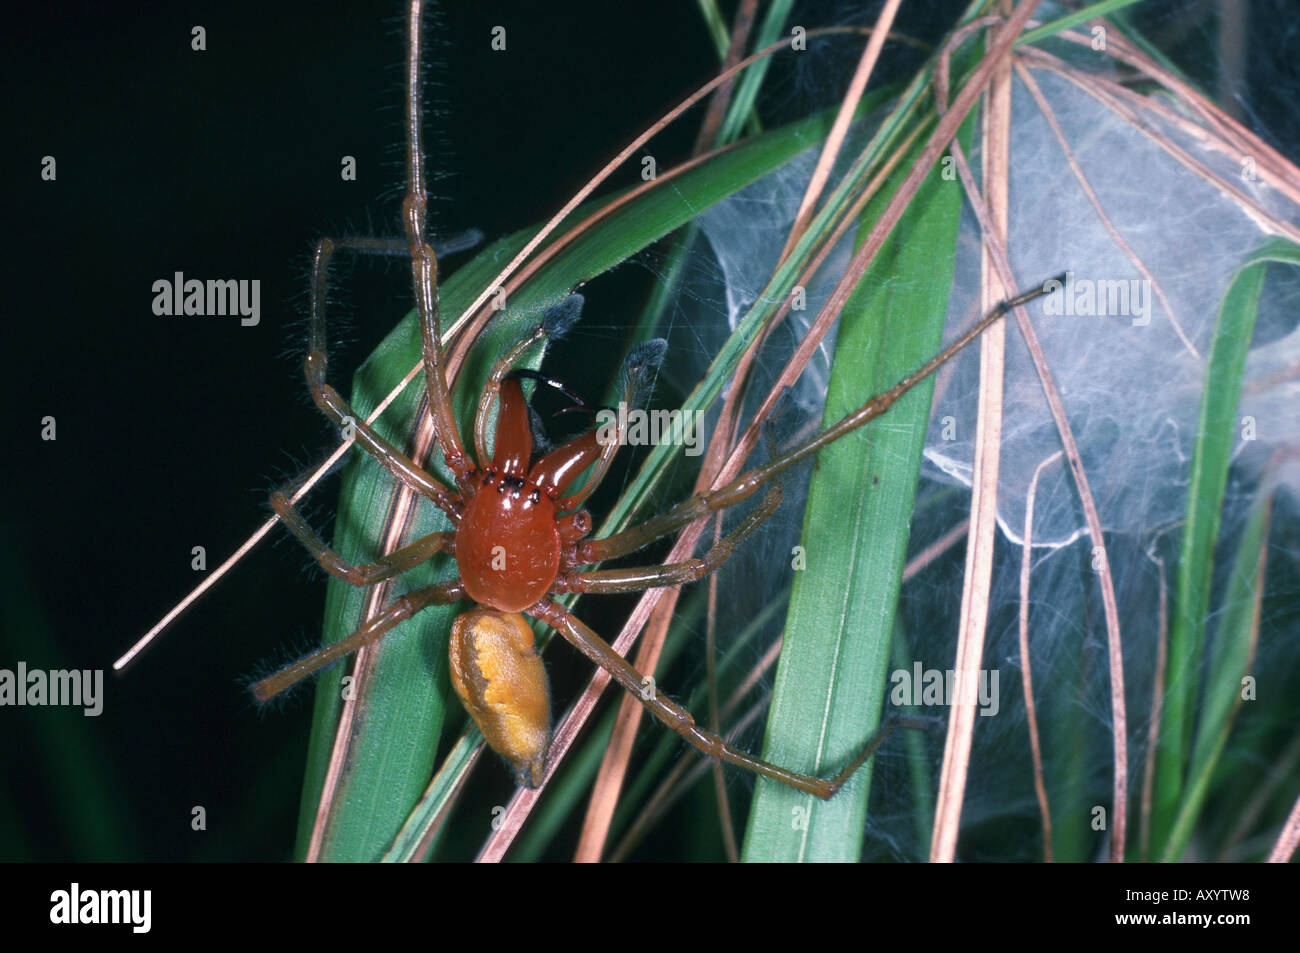 European sac spider (Cheiracanthium punctorium) Stock Photo